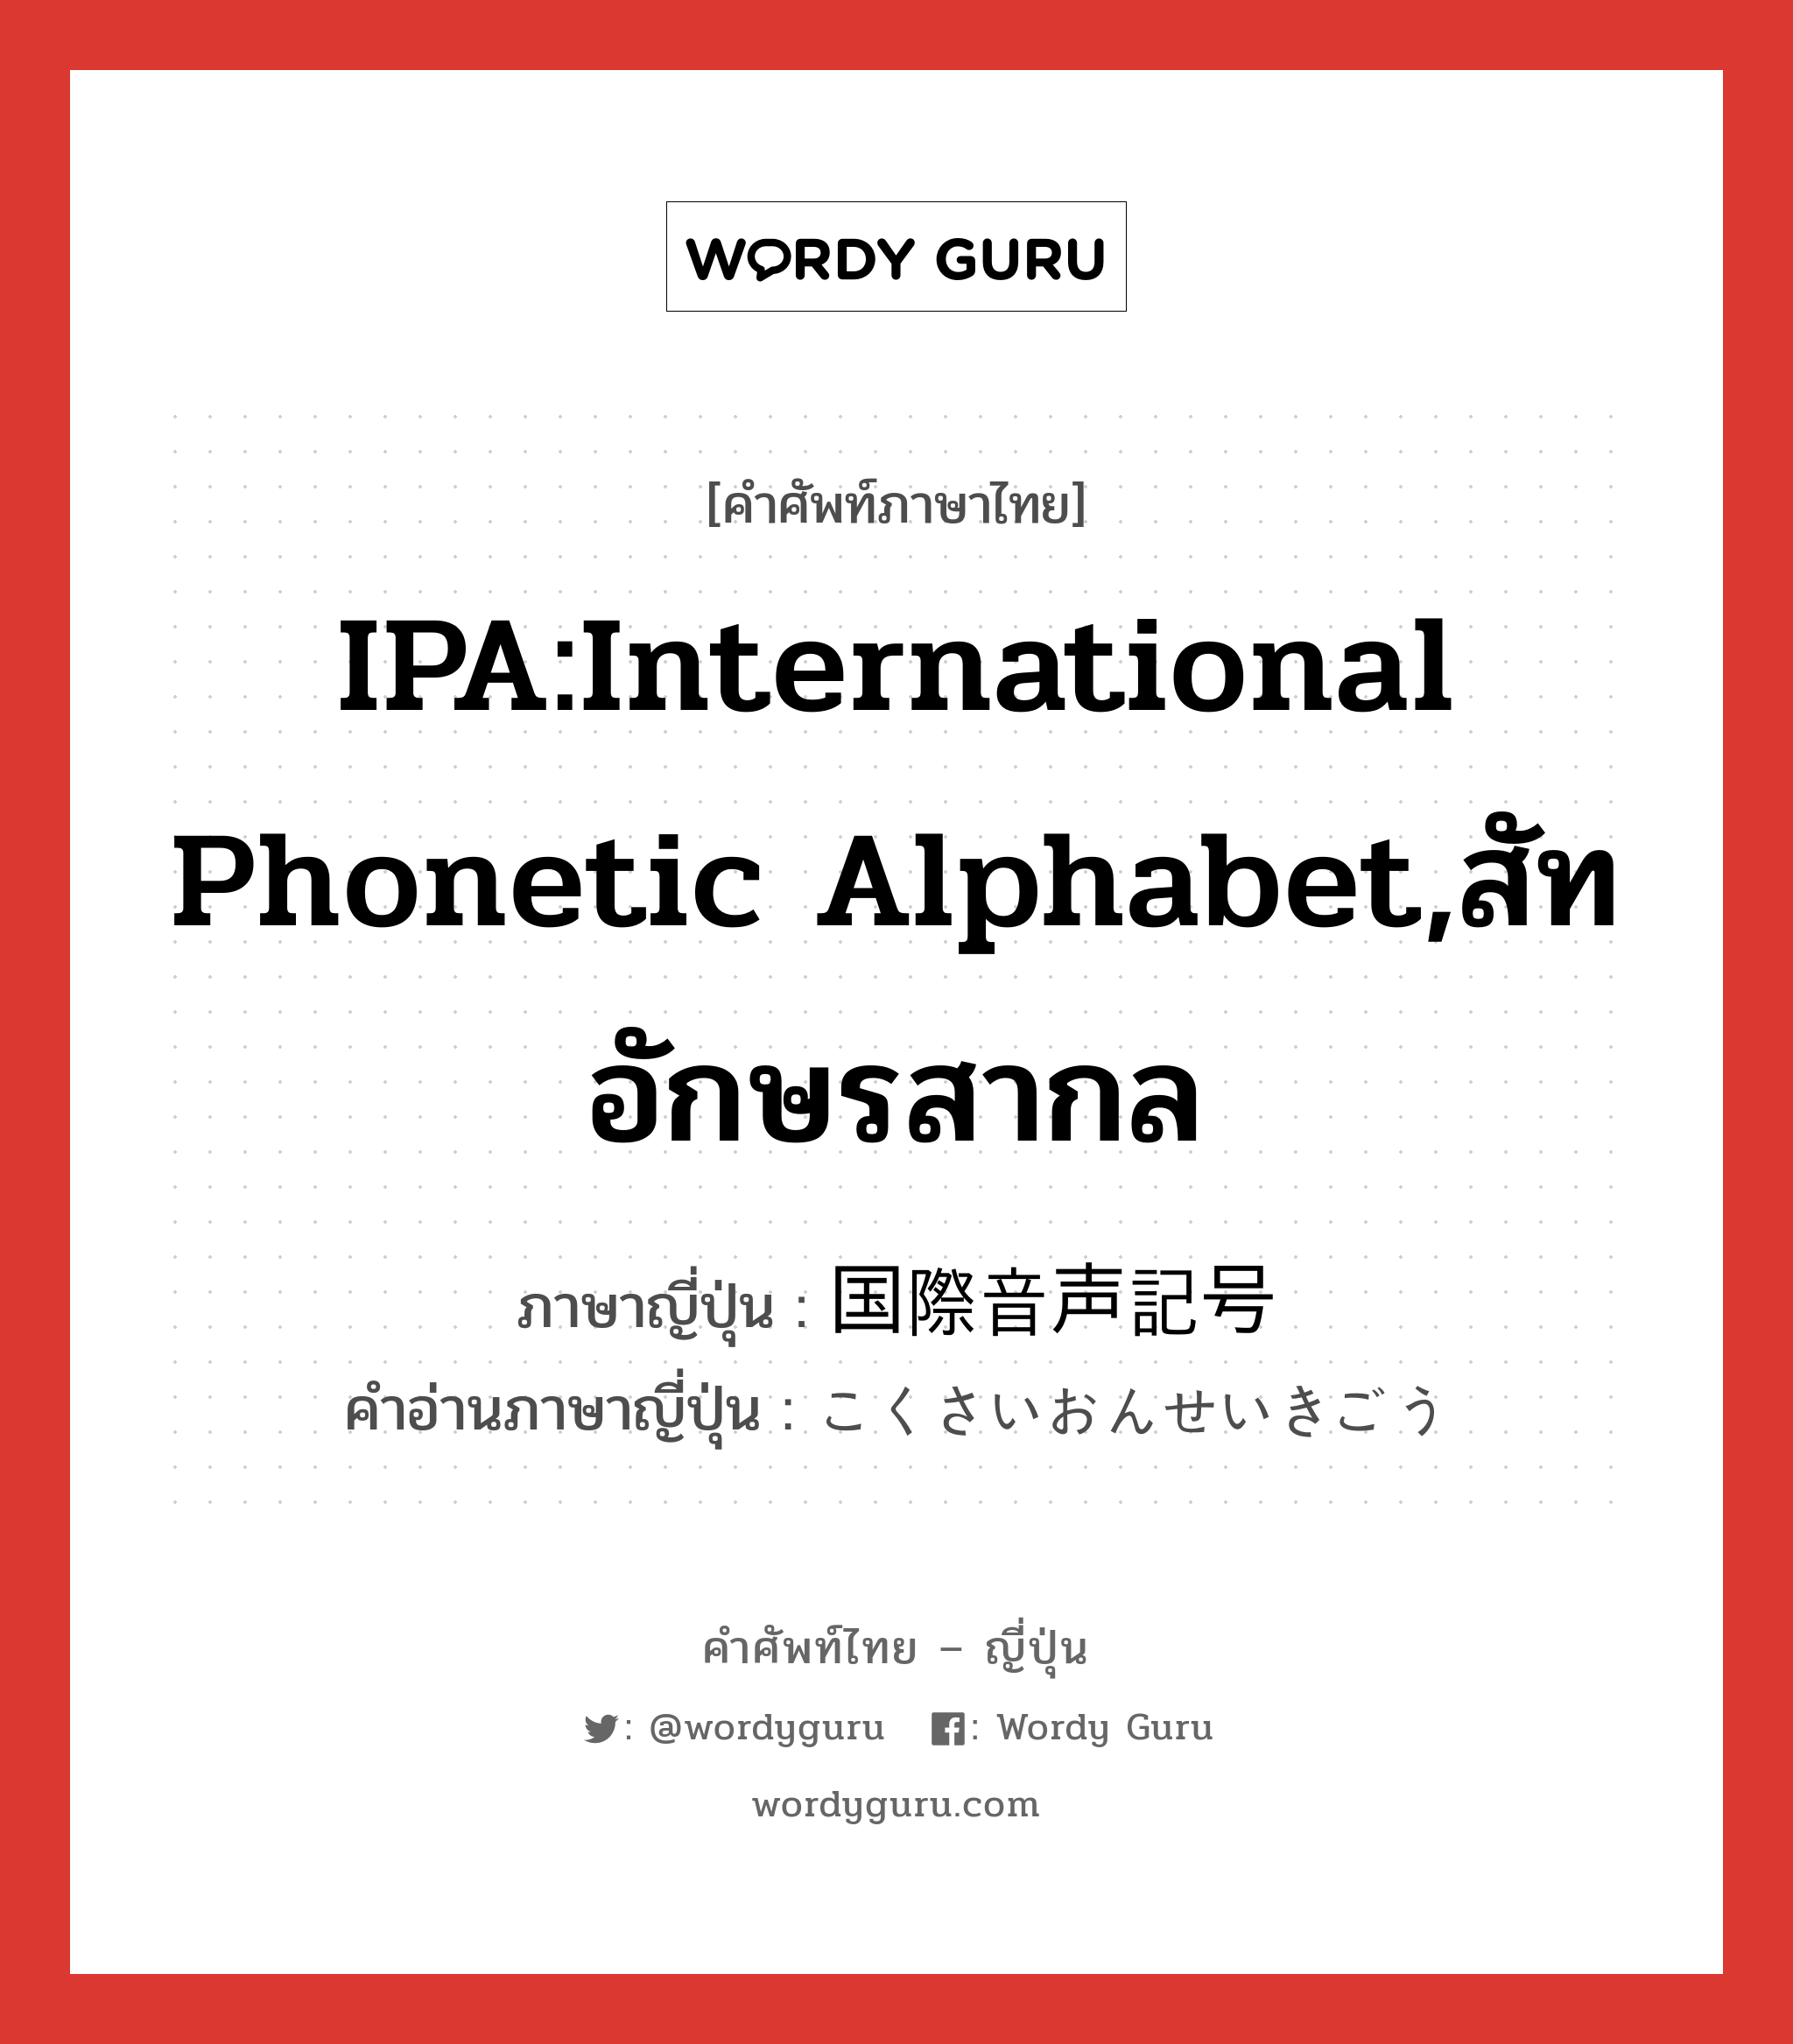 IPA:International Phonetic Alphabet,สัทอักษรสากล ภาษาญี่ปุ่นคืออะไร, คำศัพท์ภาษาไทย - ญี่ปุ่น IPA:International Phonetic Alphabet,สัทอักษรสากล ภาษาญี่ปุ่น 国際音声記号 คำอ่านภาษาญี่ปุ่น こくさいおんせいきごう หมวด n หมวด n